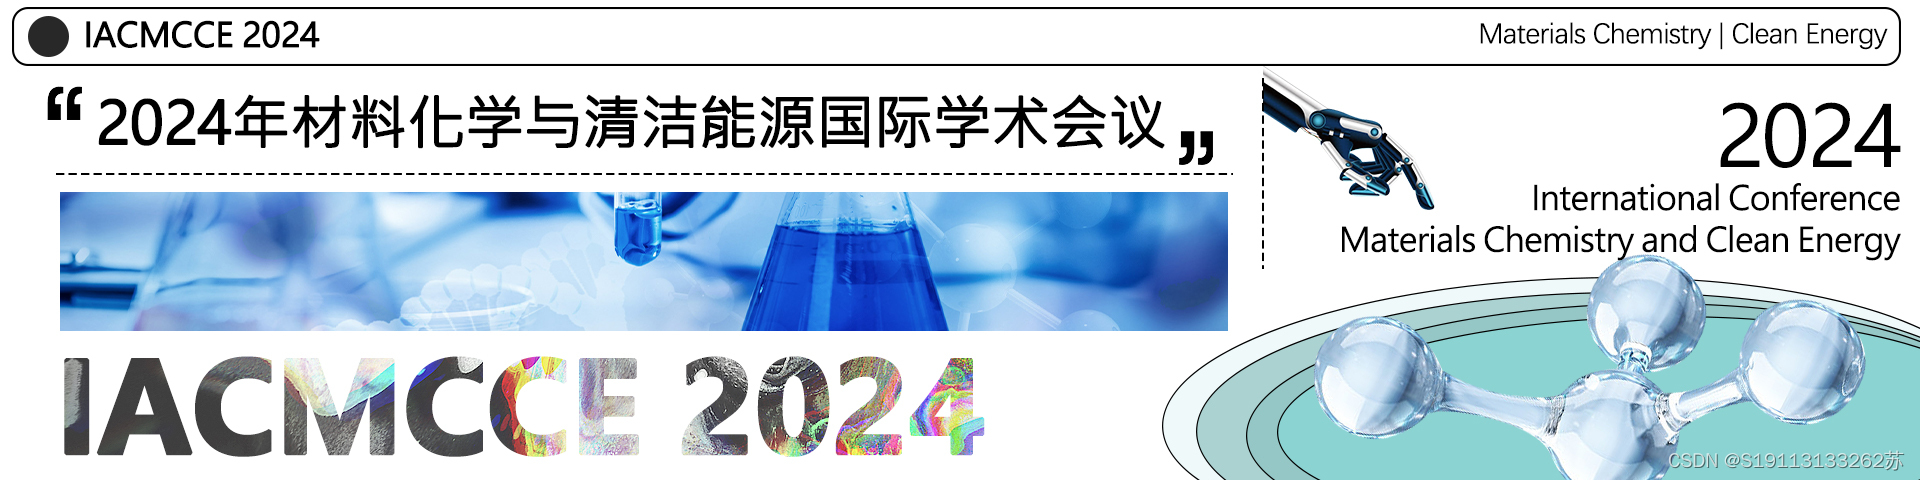 【投稿优惠|EI优质会议】2024年材料化学与清洁能源国际学术会议(IACMCCE 2024)